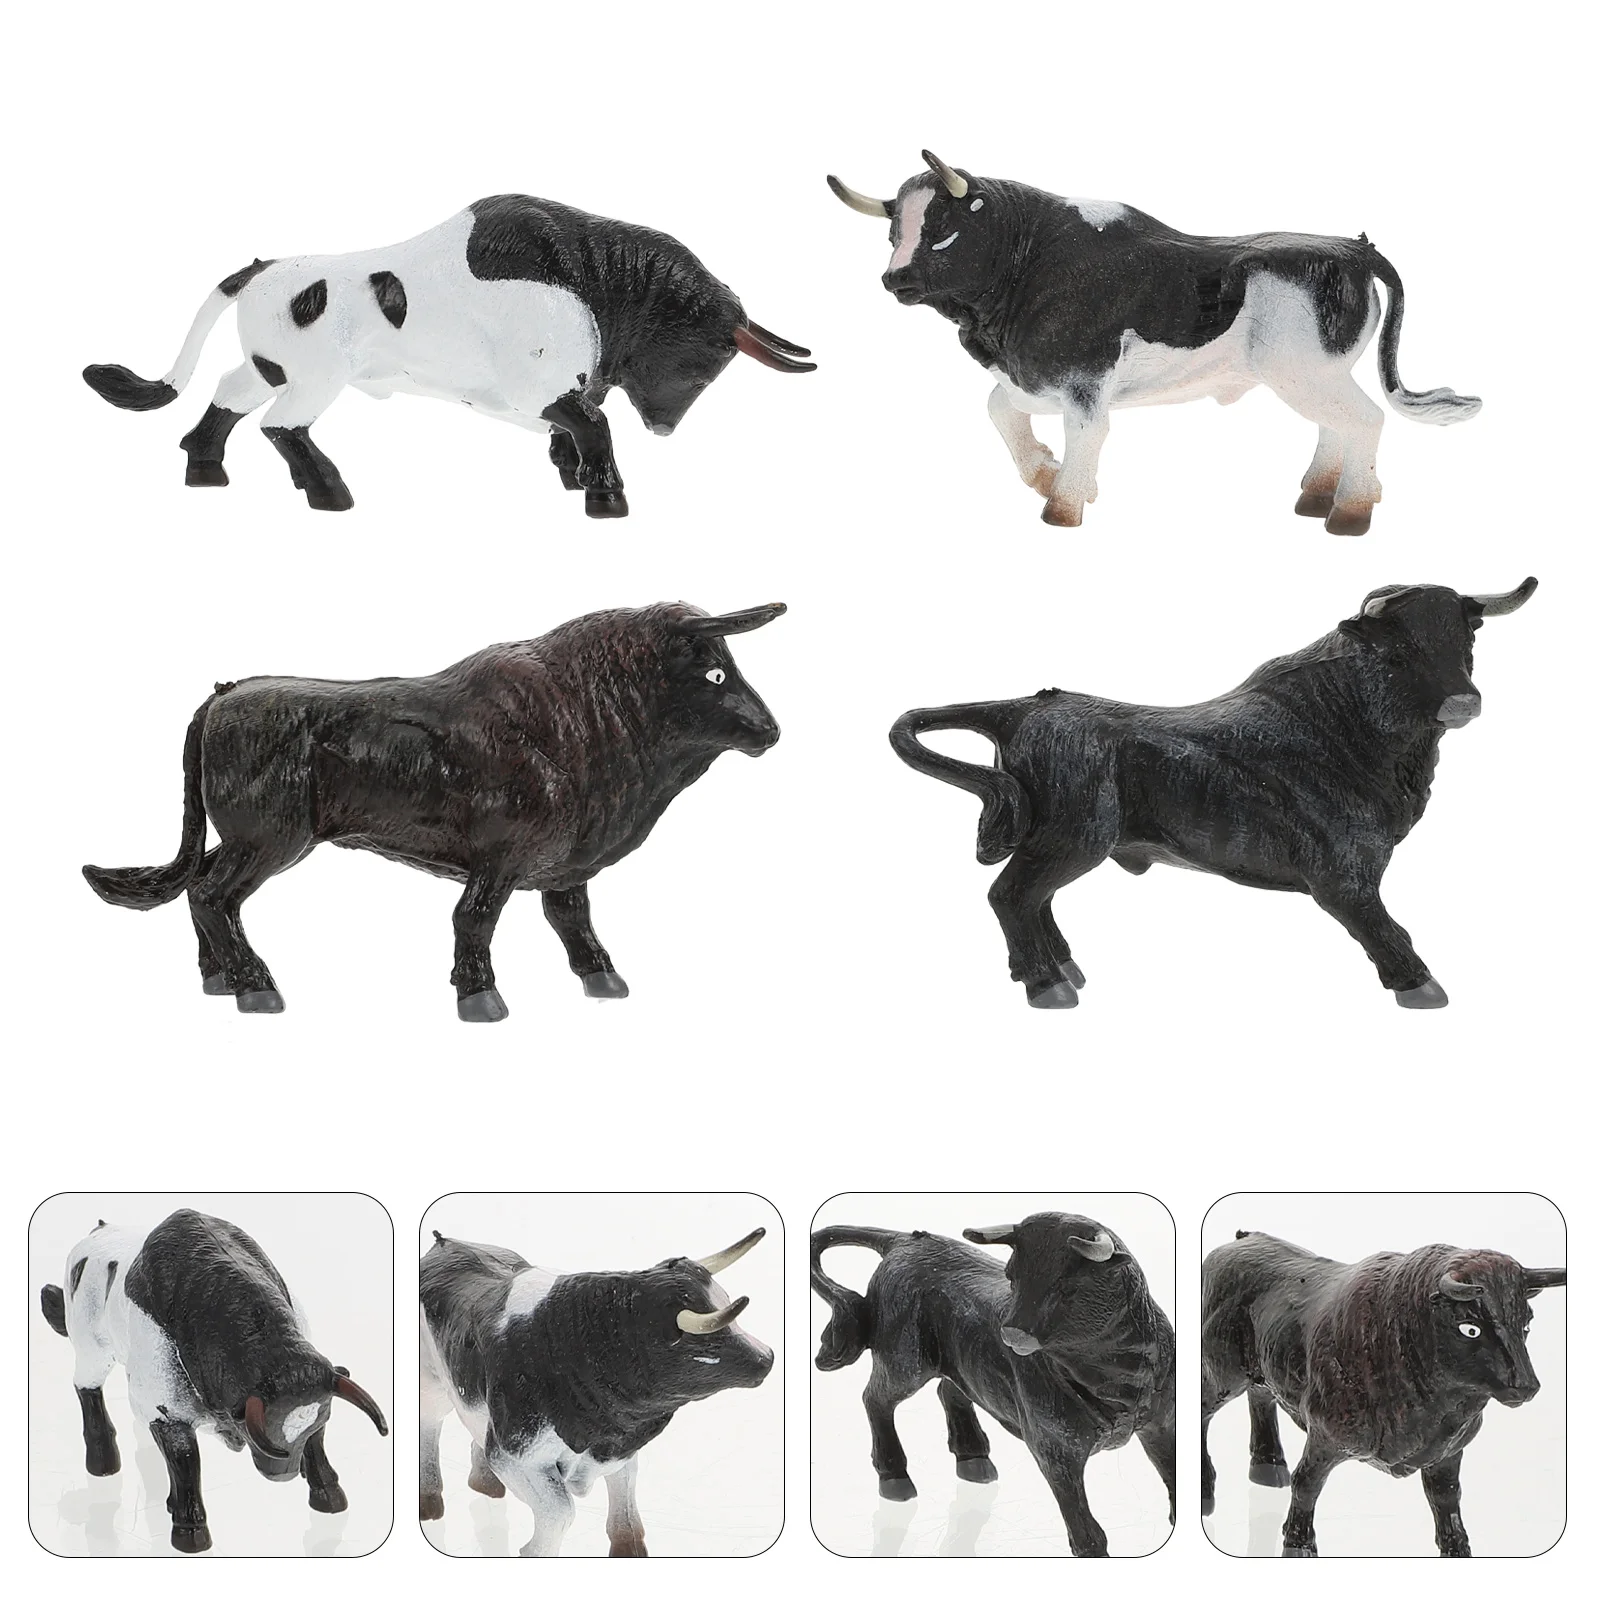 

4Pcs Simulation Miniature Cow Adornments Home Desktop Ornaments Children Toys